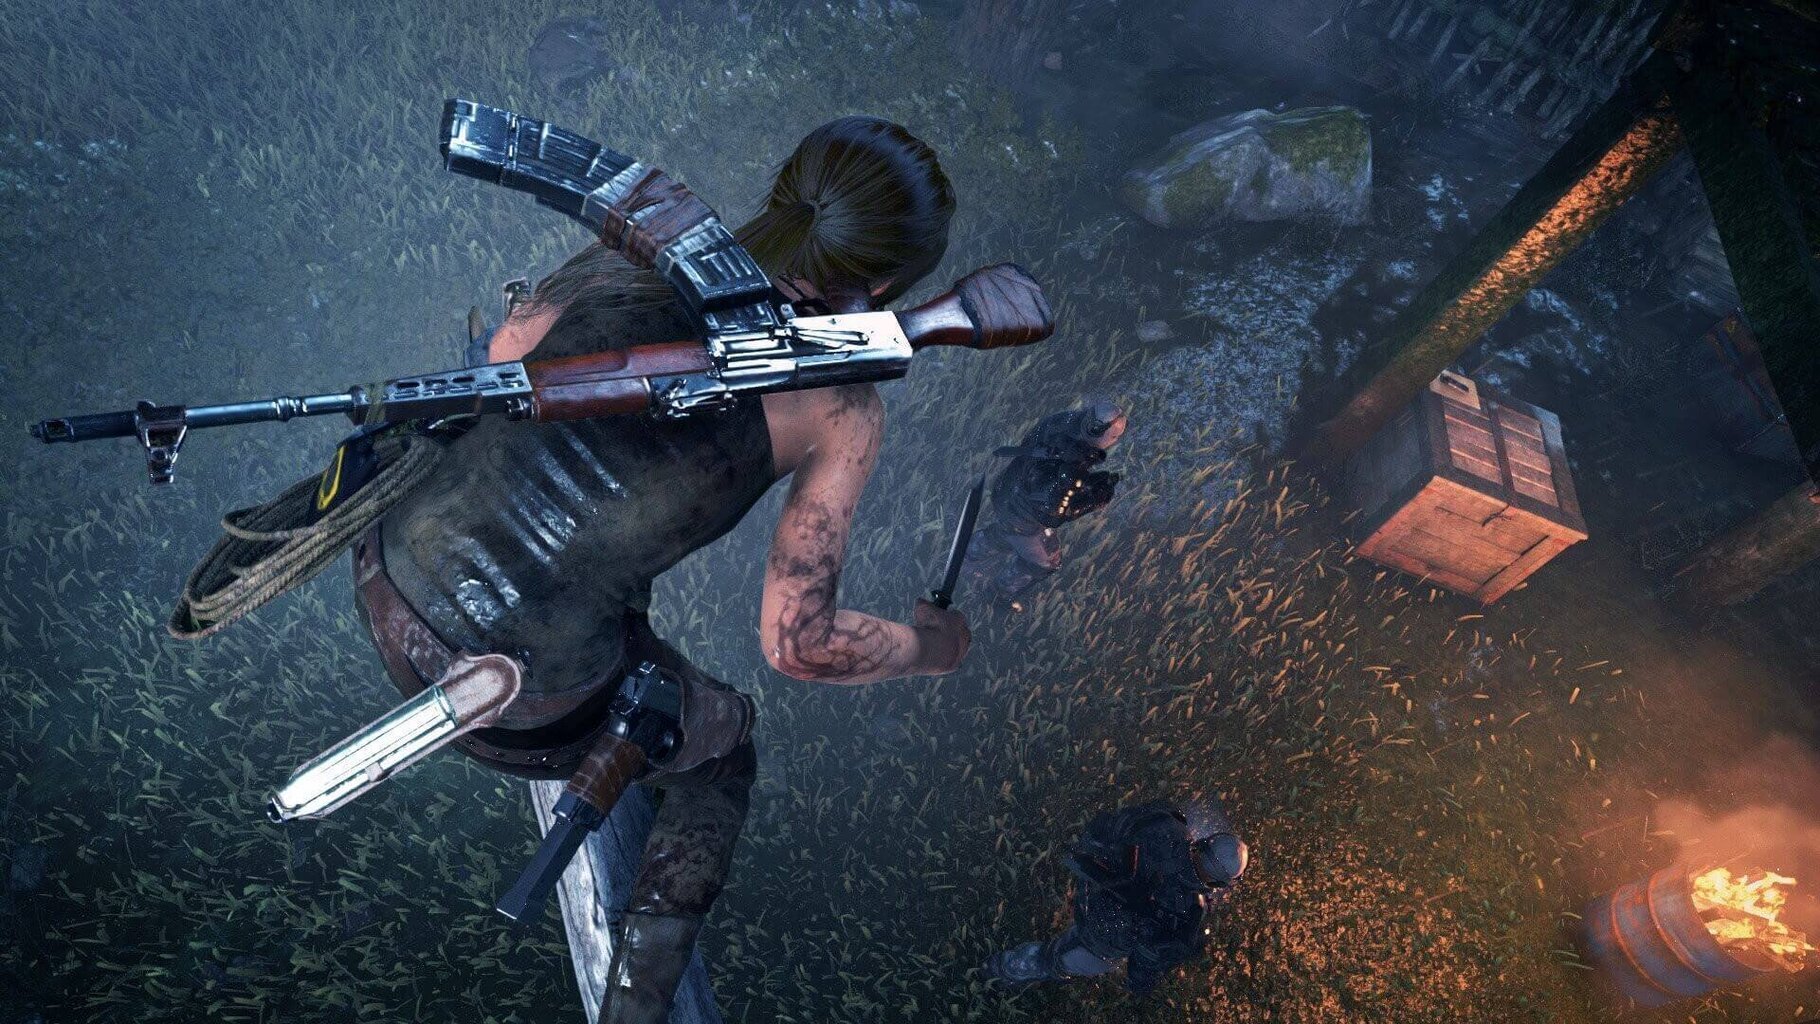 PlayStation 4 mäng Rise Of The Tomb Raider: 20 Year Celebration hind ja info | Arvutimängud, konsoolimängud | kaup24.ee